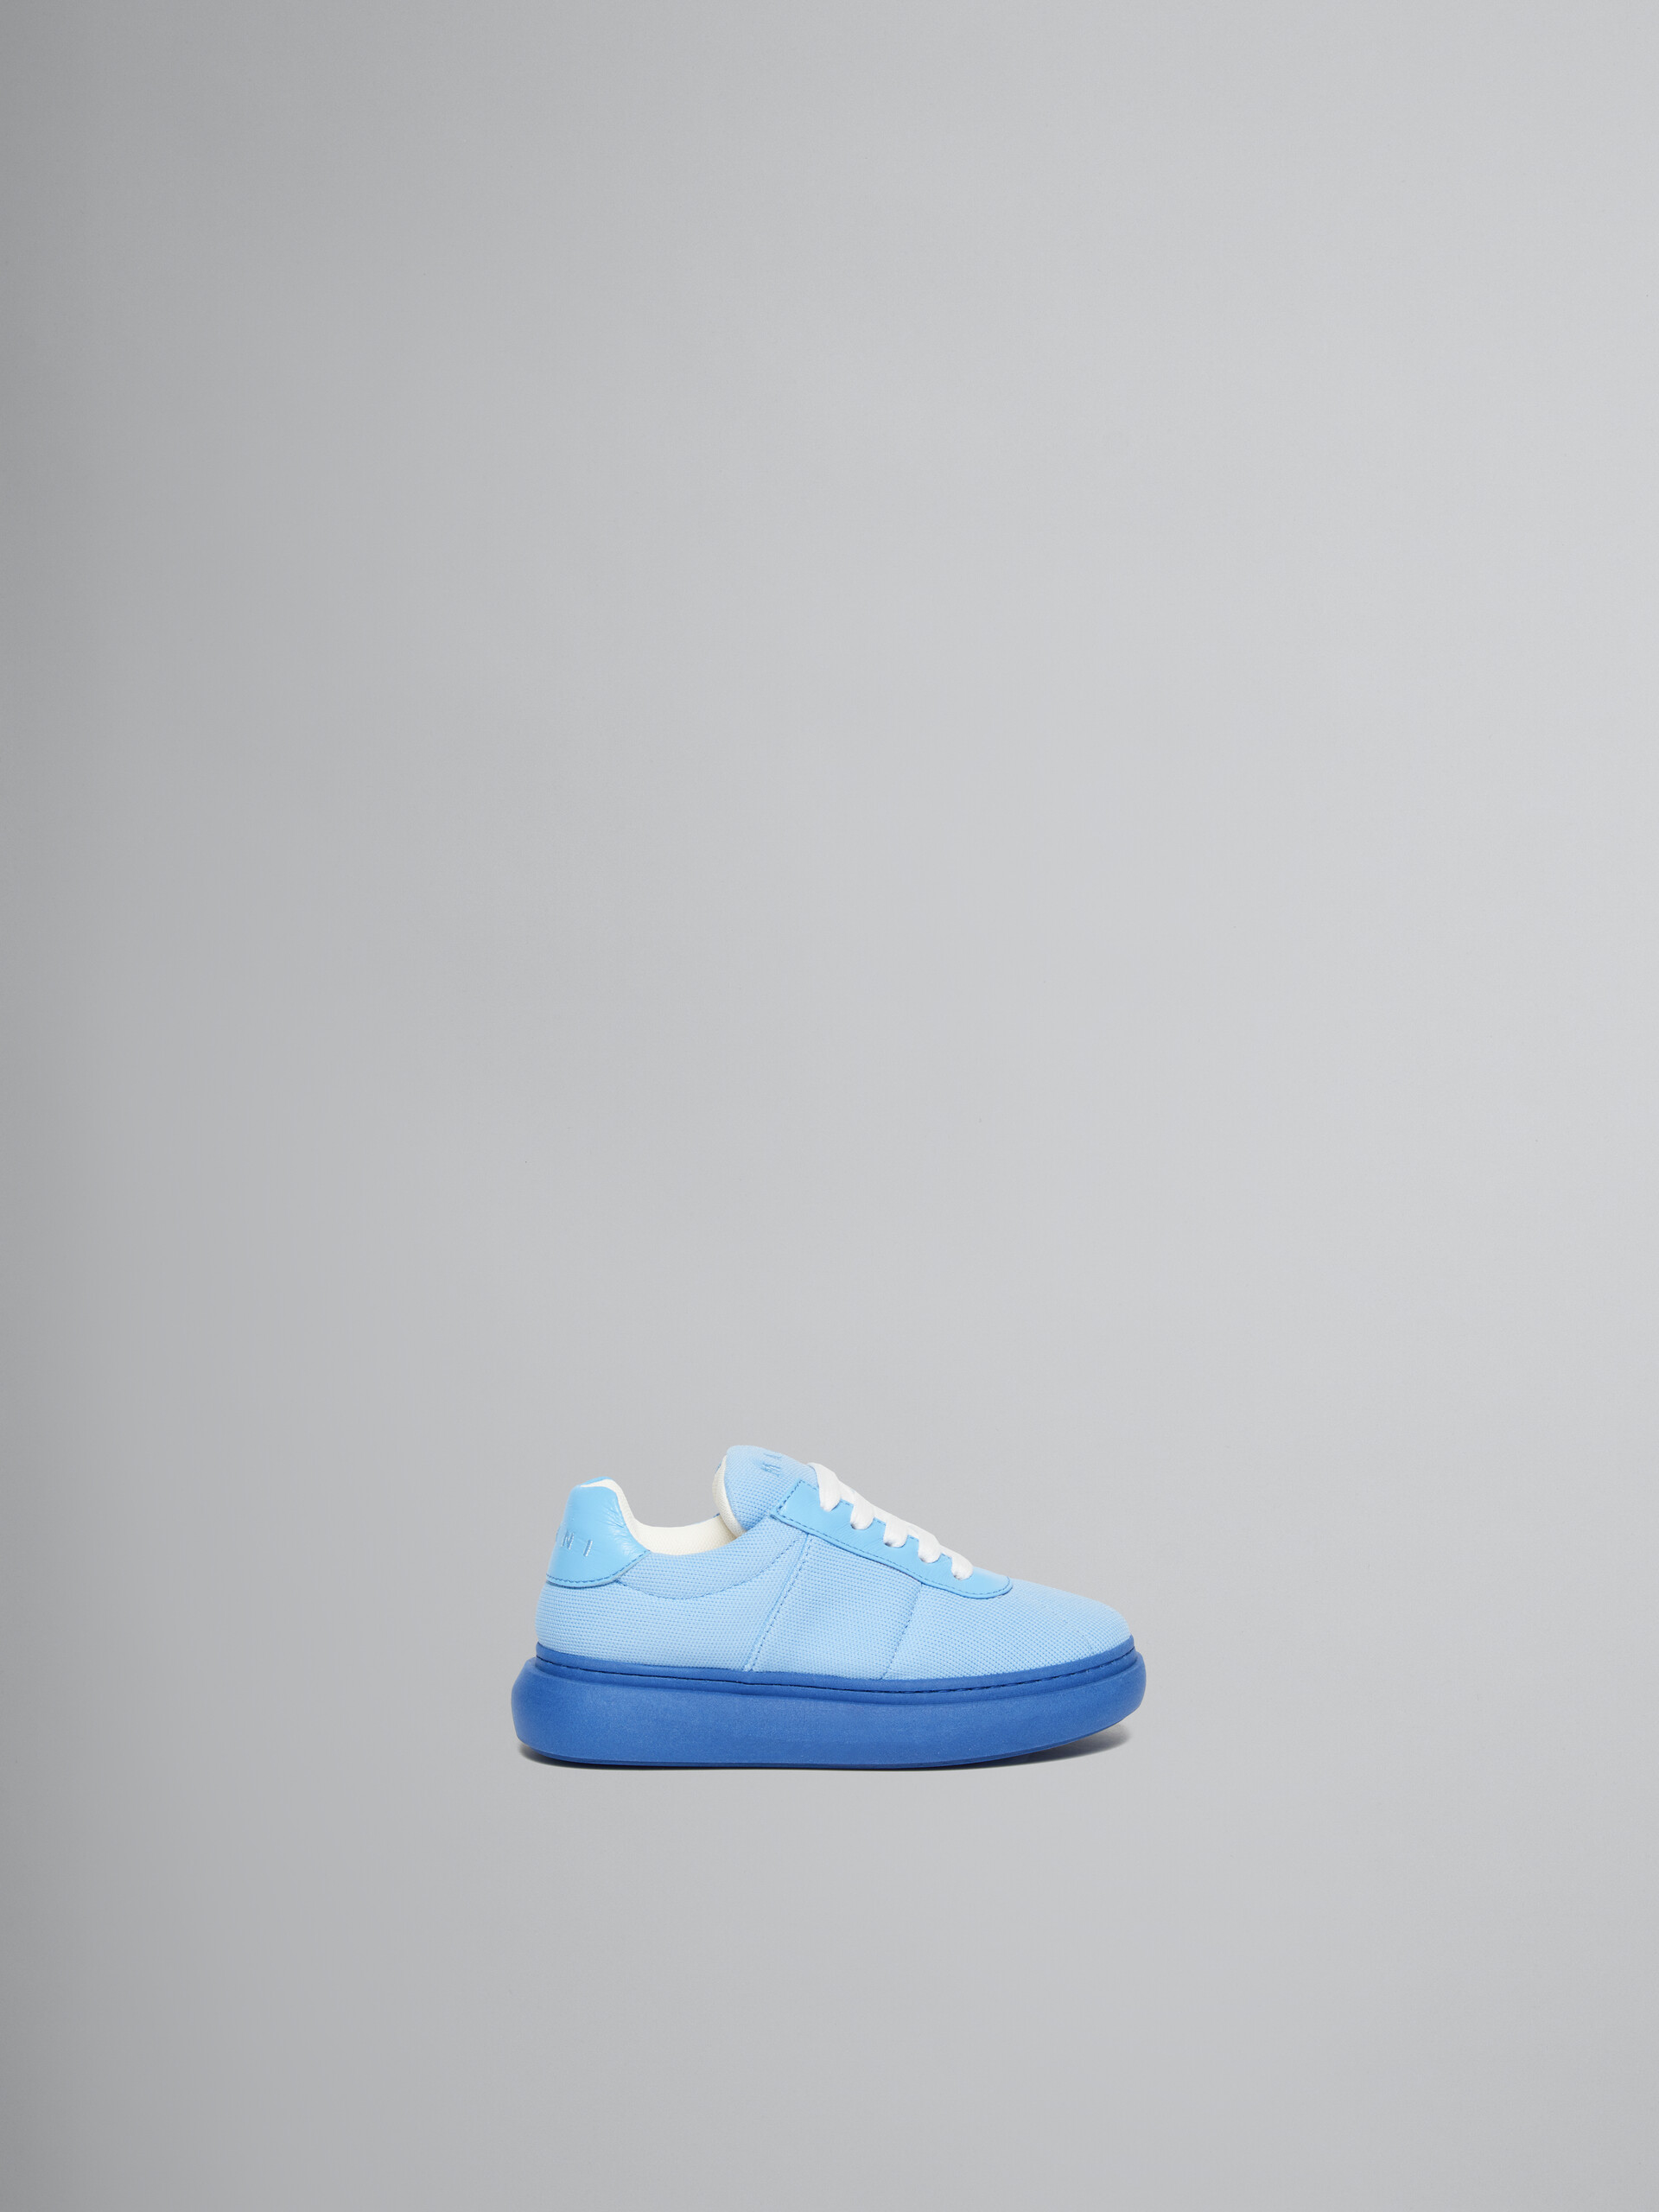 Hellblaue Sneakers aus gepolstertem Leder - KINDER - Image 1